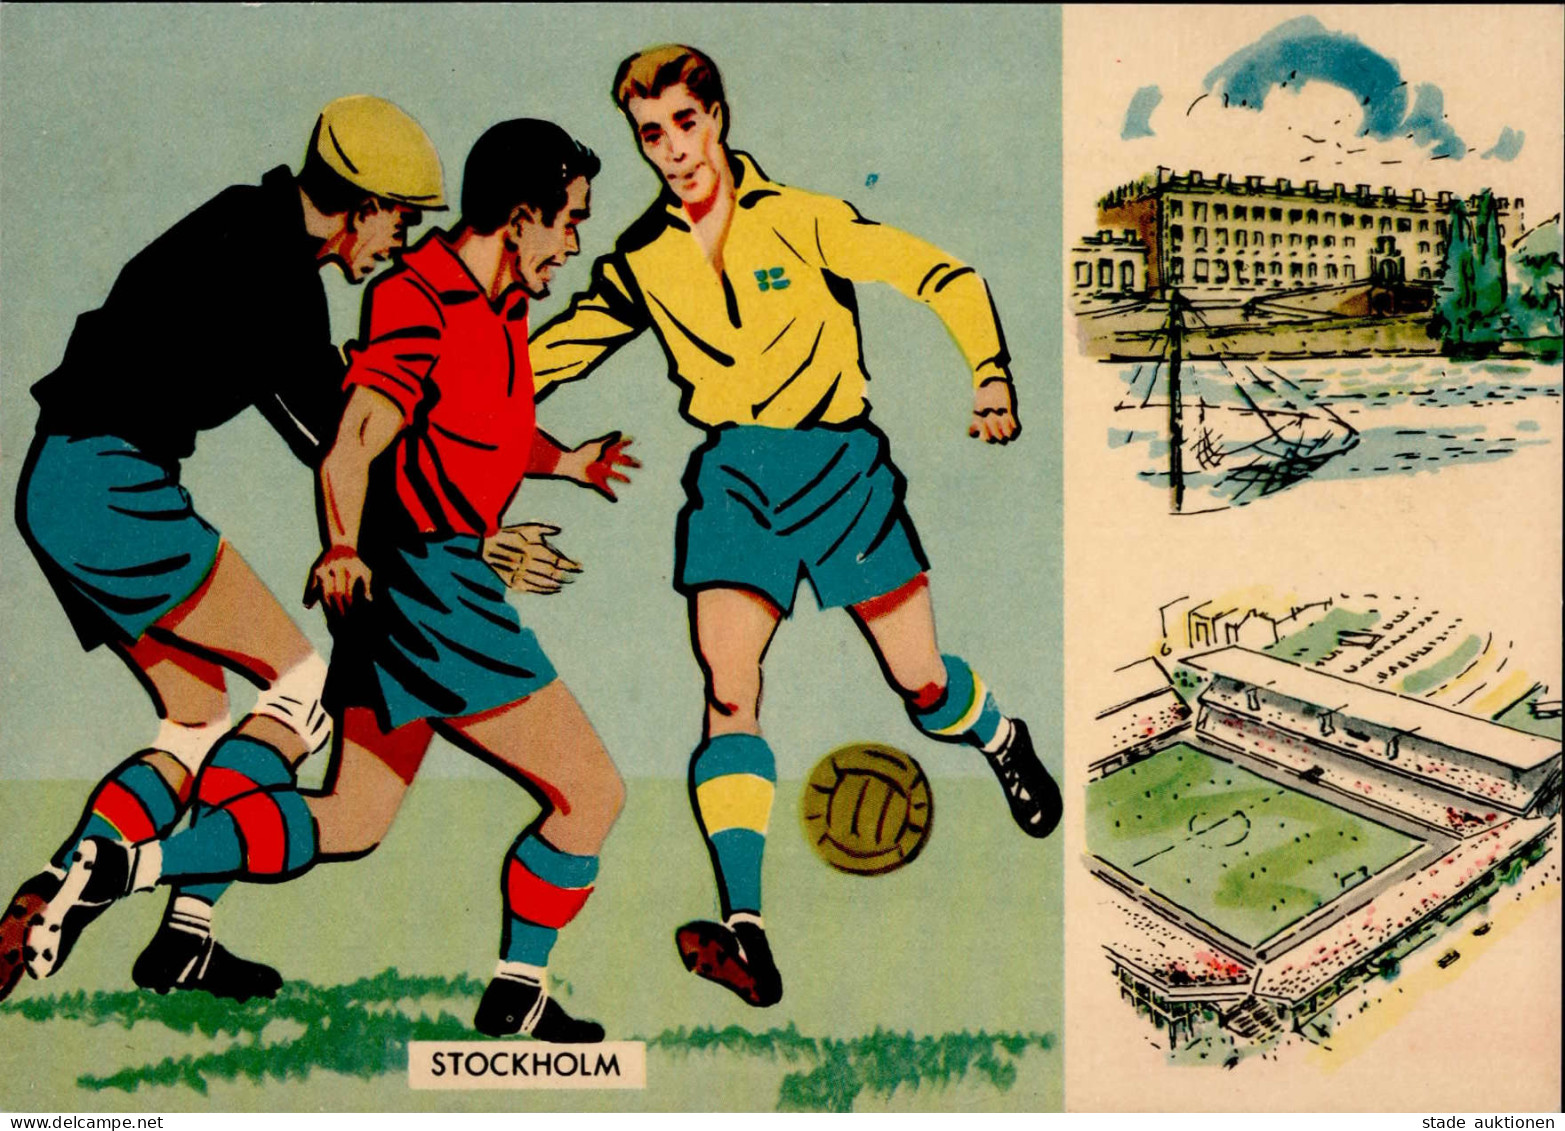 FUSSBALL - STOCKHOLM - FUSSBALL-WELTMEISTERSCHAFT 1958 FRANKREICH-BRASILIEN S-o I - Football